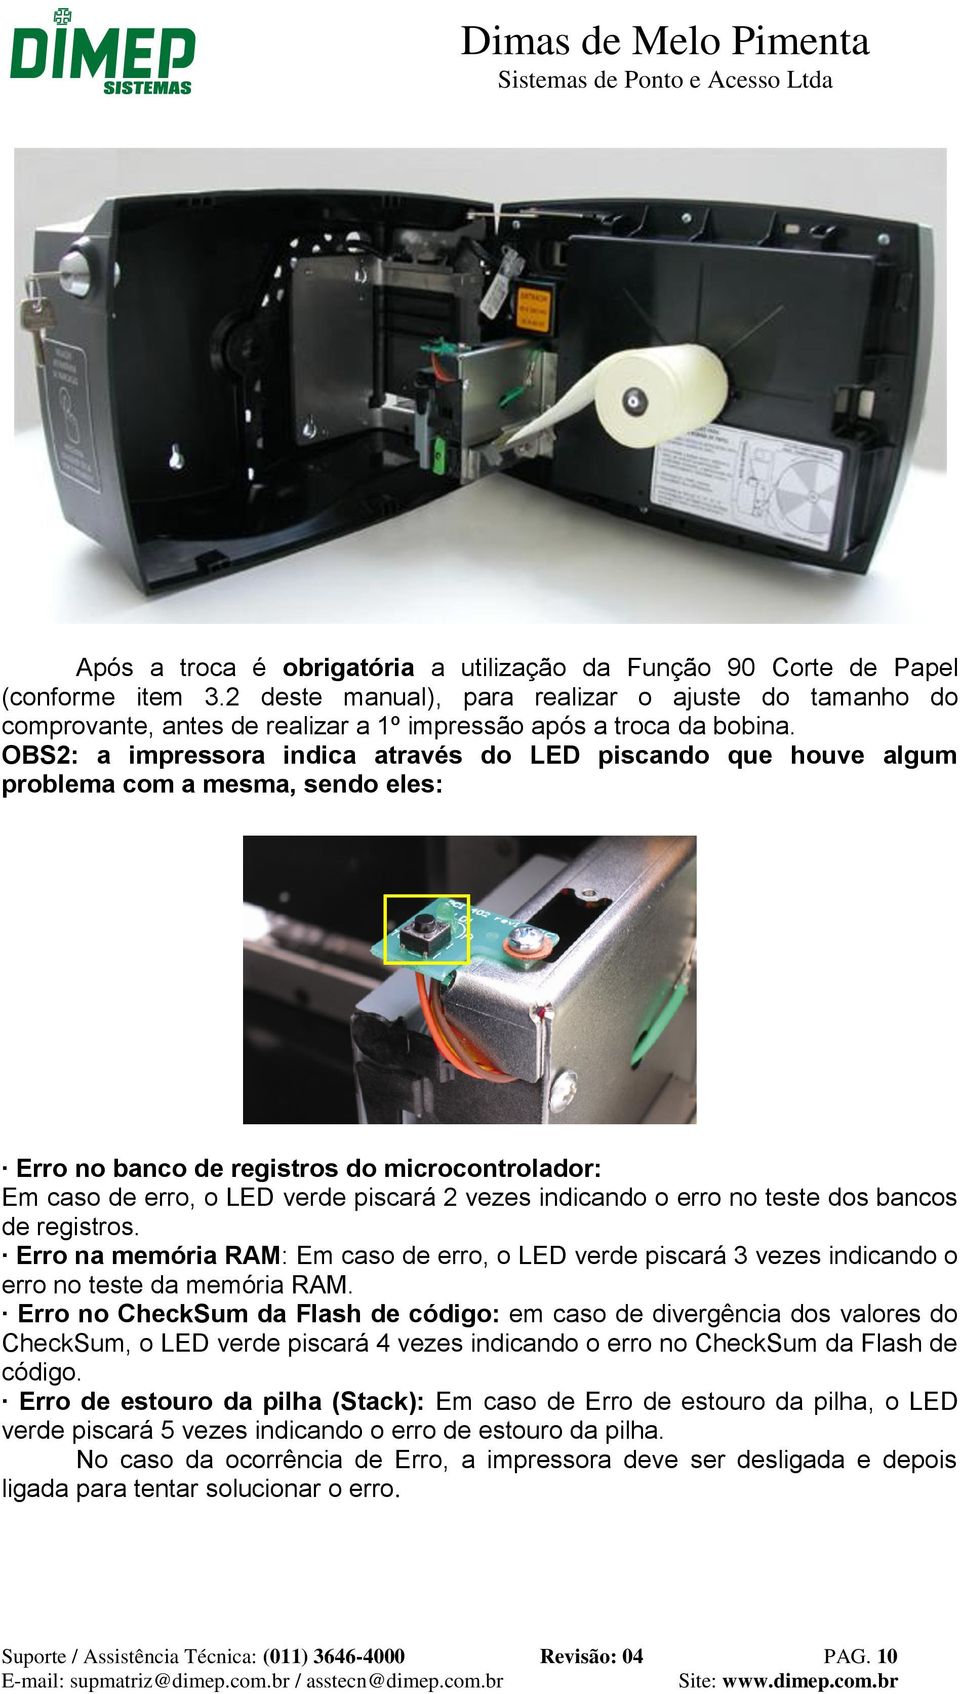 OBS2: a impressora indica através do LED piscando que houve algum problema com a mesma, sendo eles: Erro no banco de registros do microcontrolador: Em caso de erro, o LED verde piscará 2 vezes